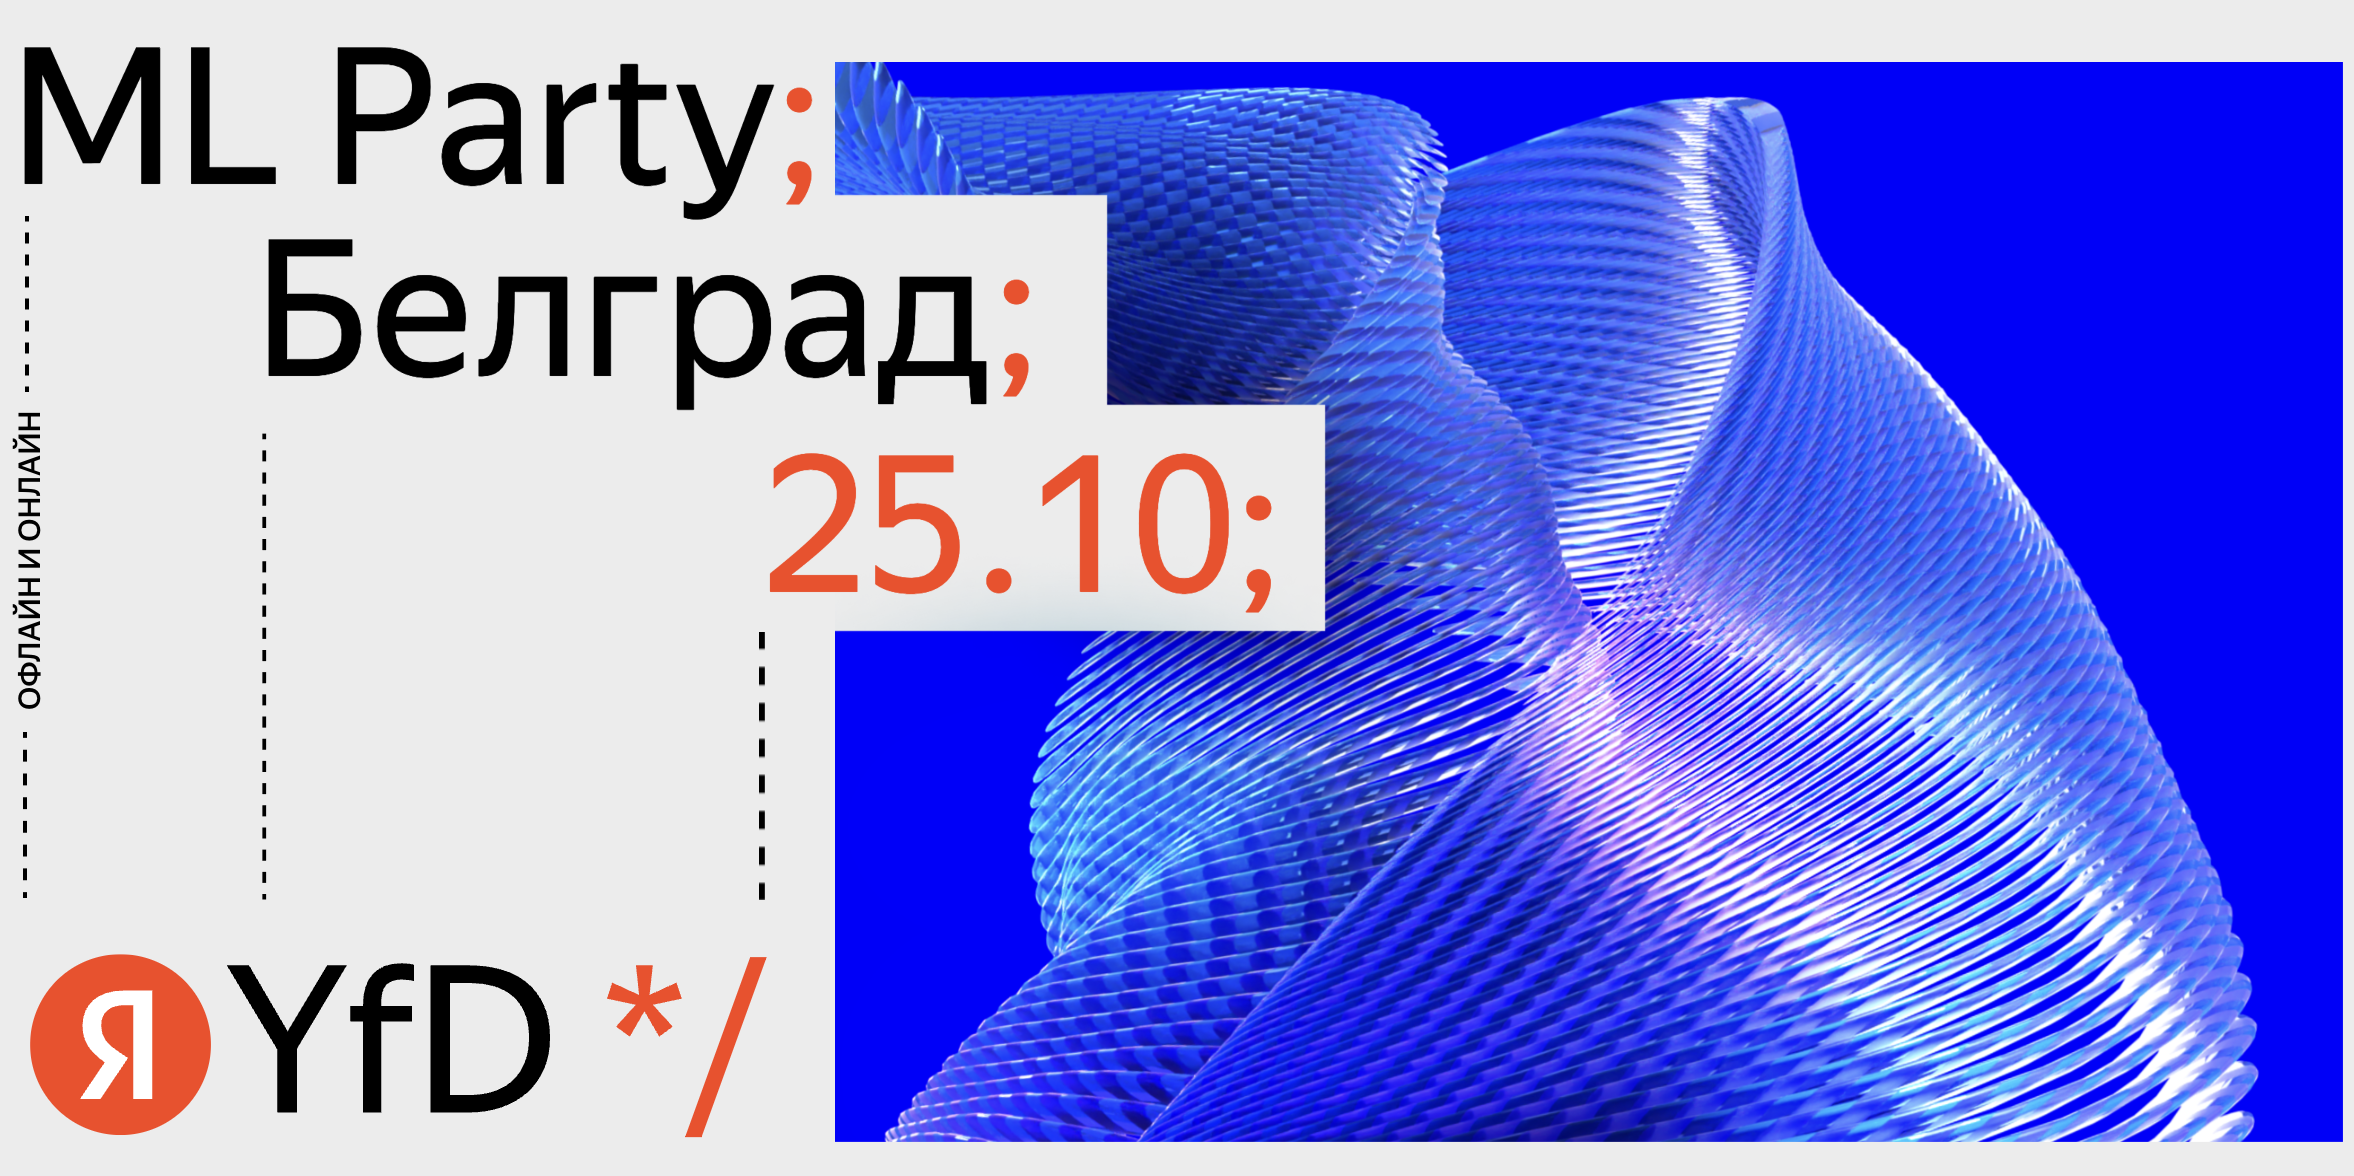 Обложка мероприятия ML Party от Яндекса